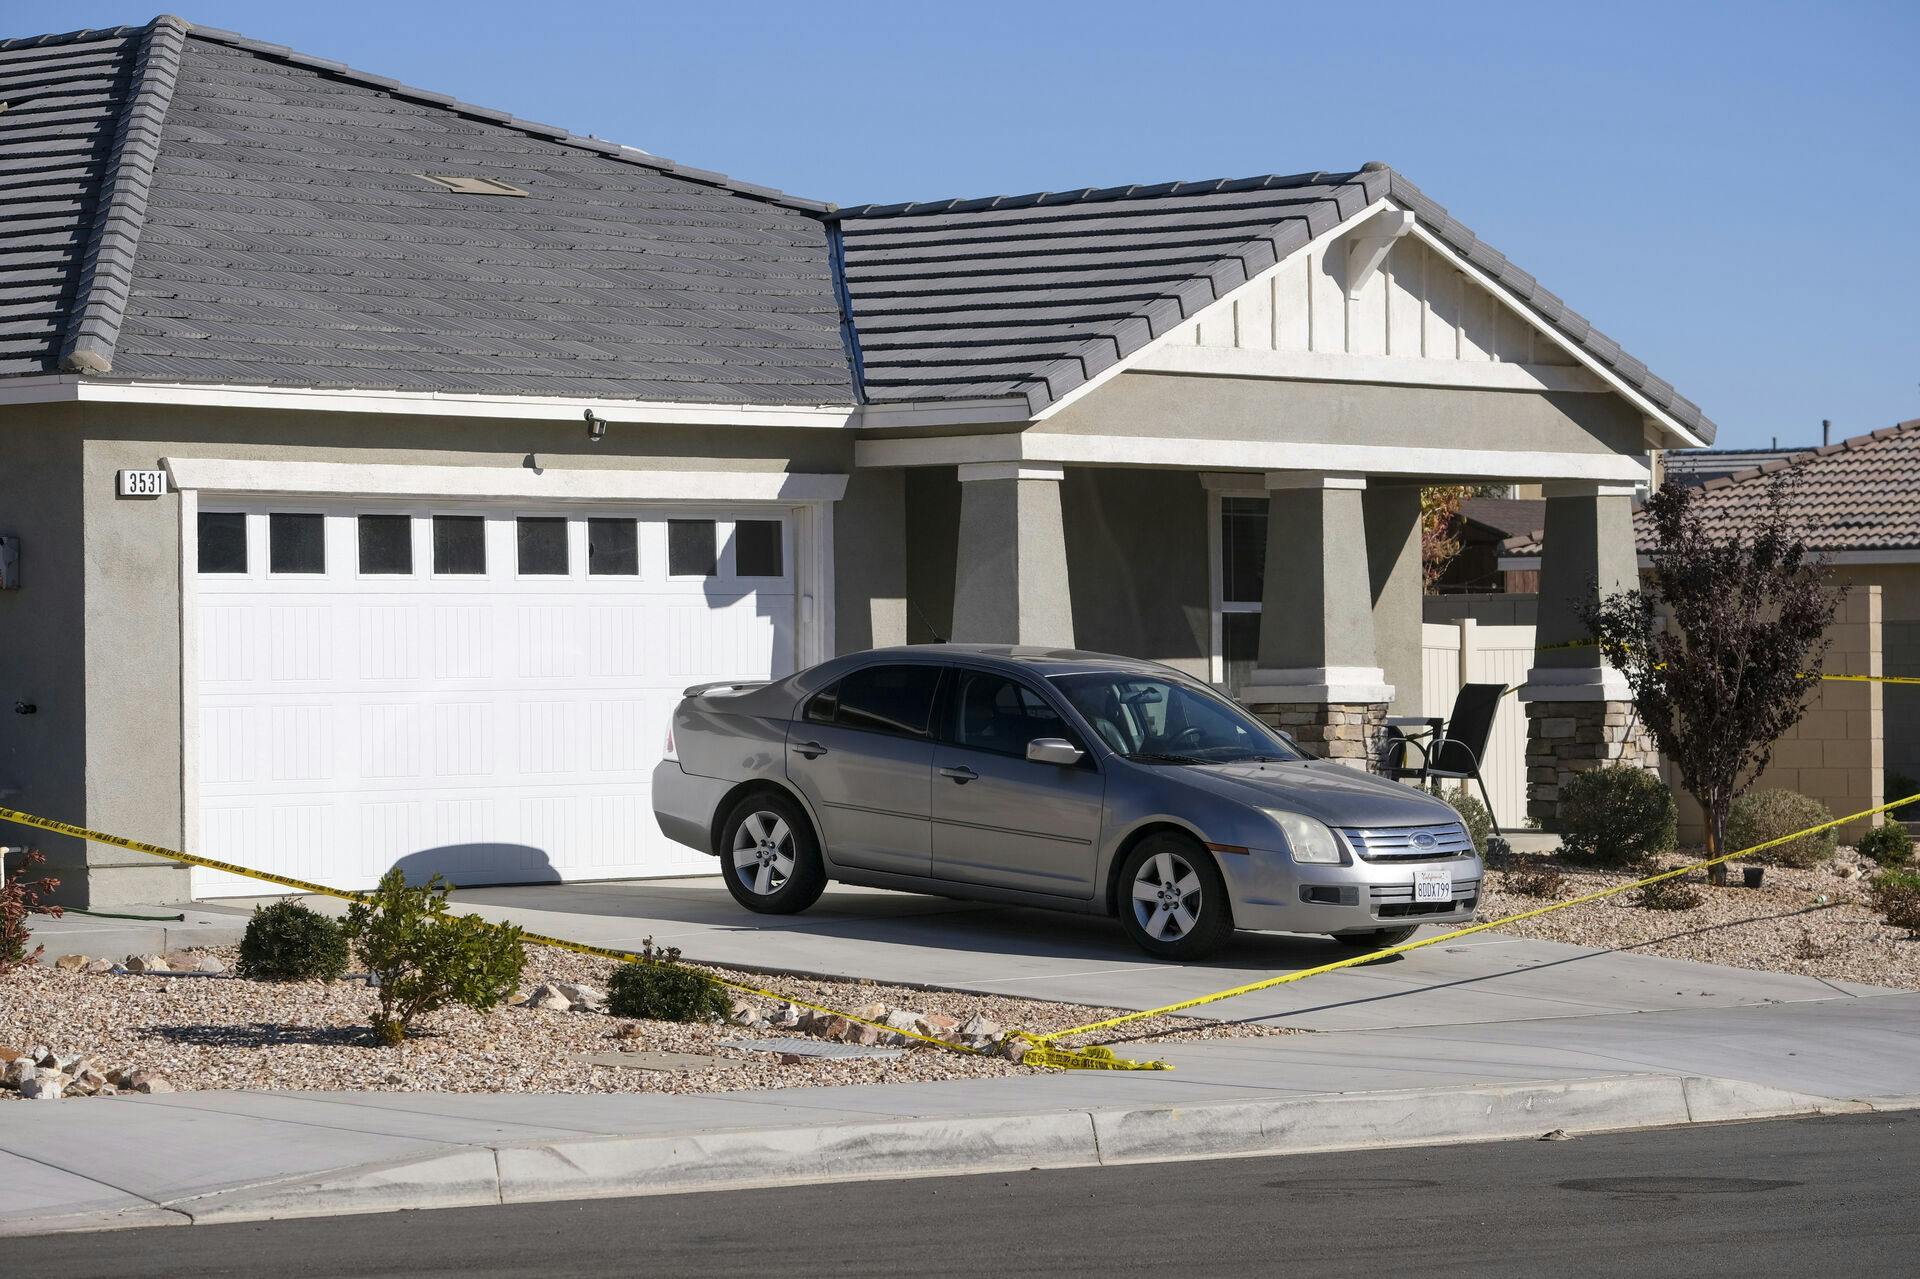 Drabene blev begået i familiens hus i byen Lancaster, Californien. Her ser huset spærret af efter drabene.